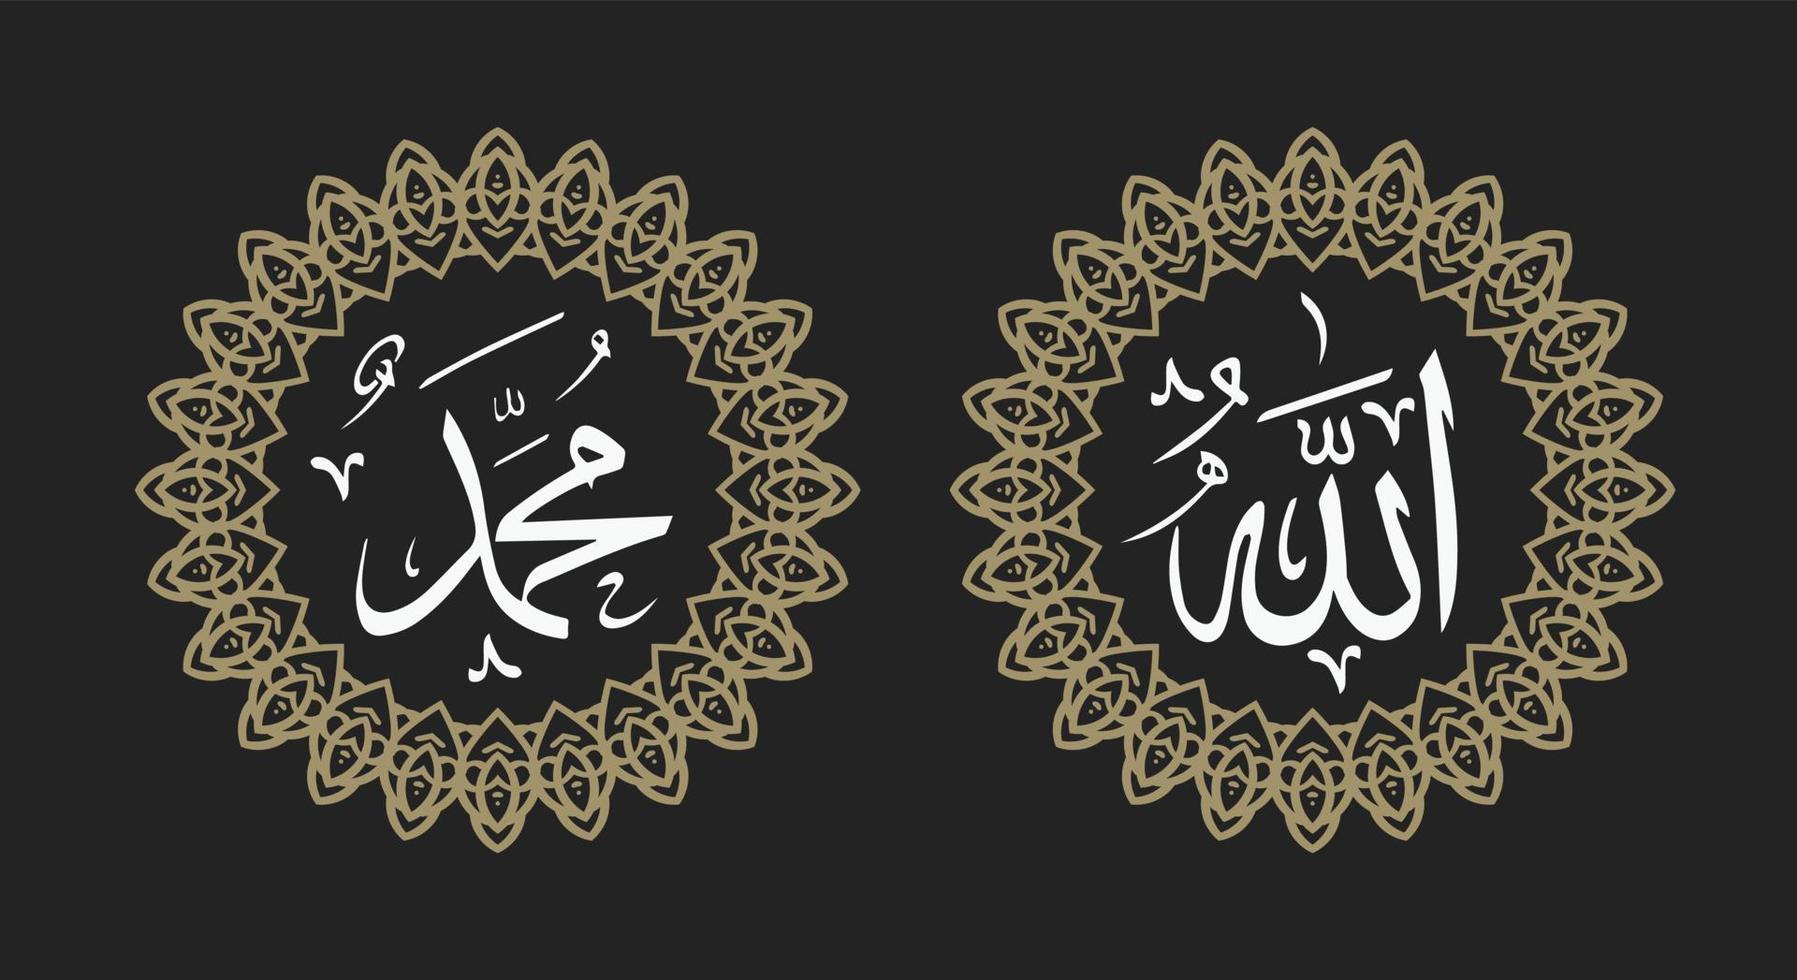 allah muhammad namn på allah muhammad, allah muhammad arabisk islamisk kalligrafikonst, med cirkelram och retrofärg vektor